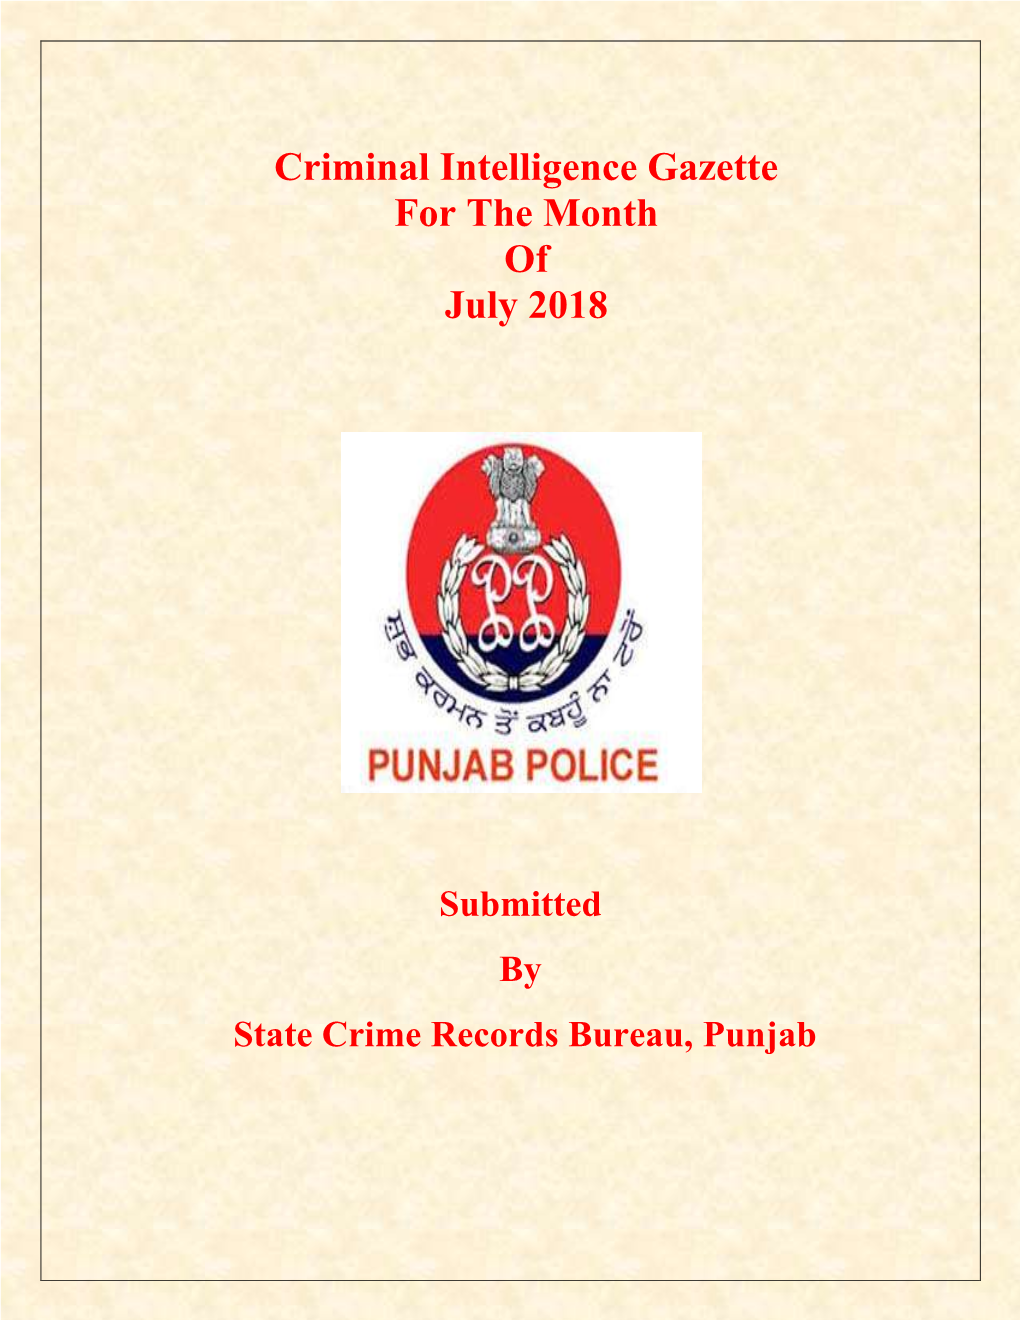 Criminal Intelligence Gazette for the Month of July 2018